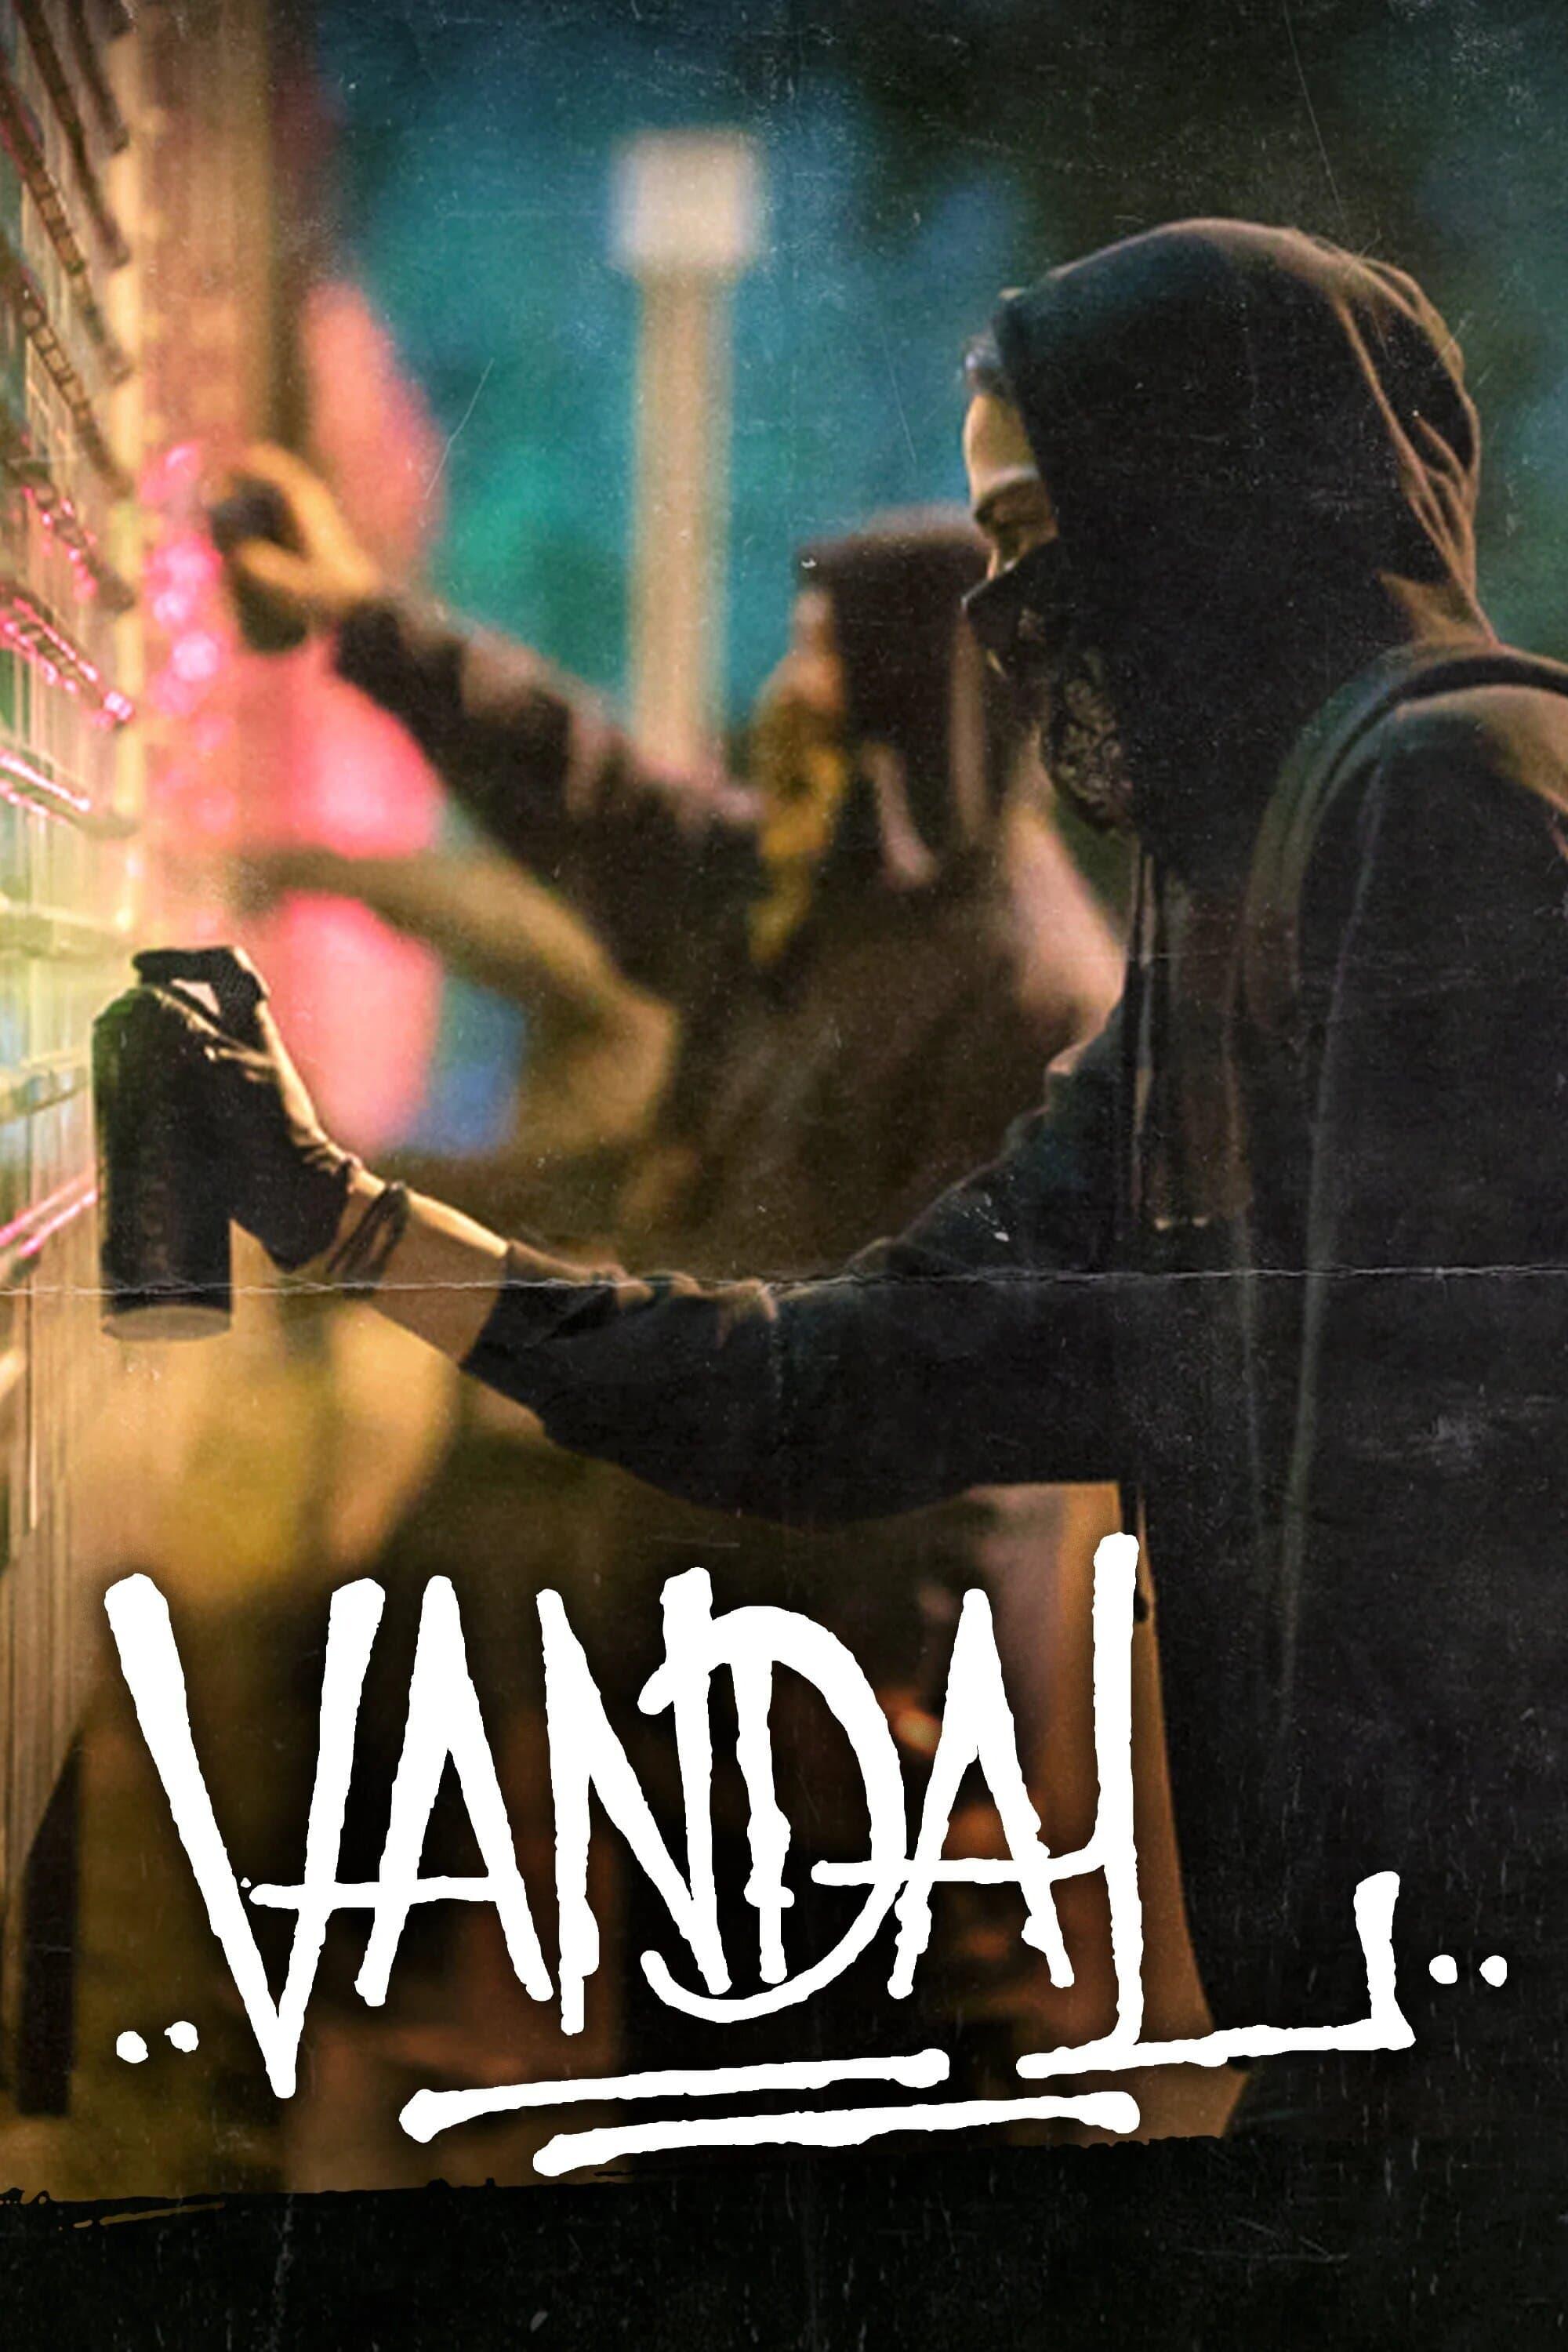 Vandal poster